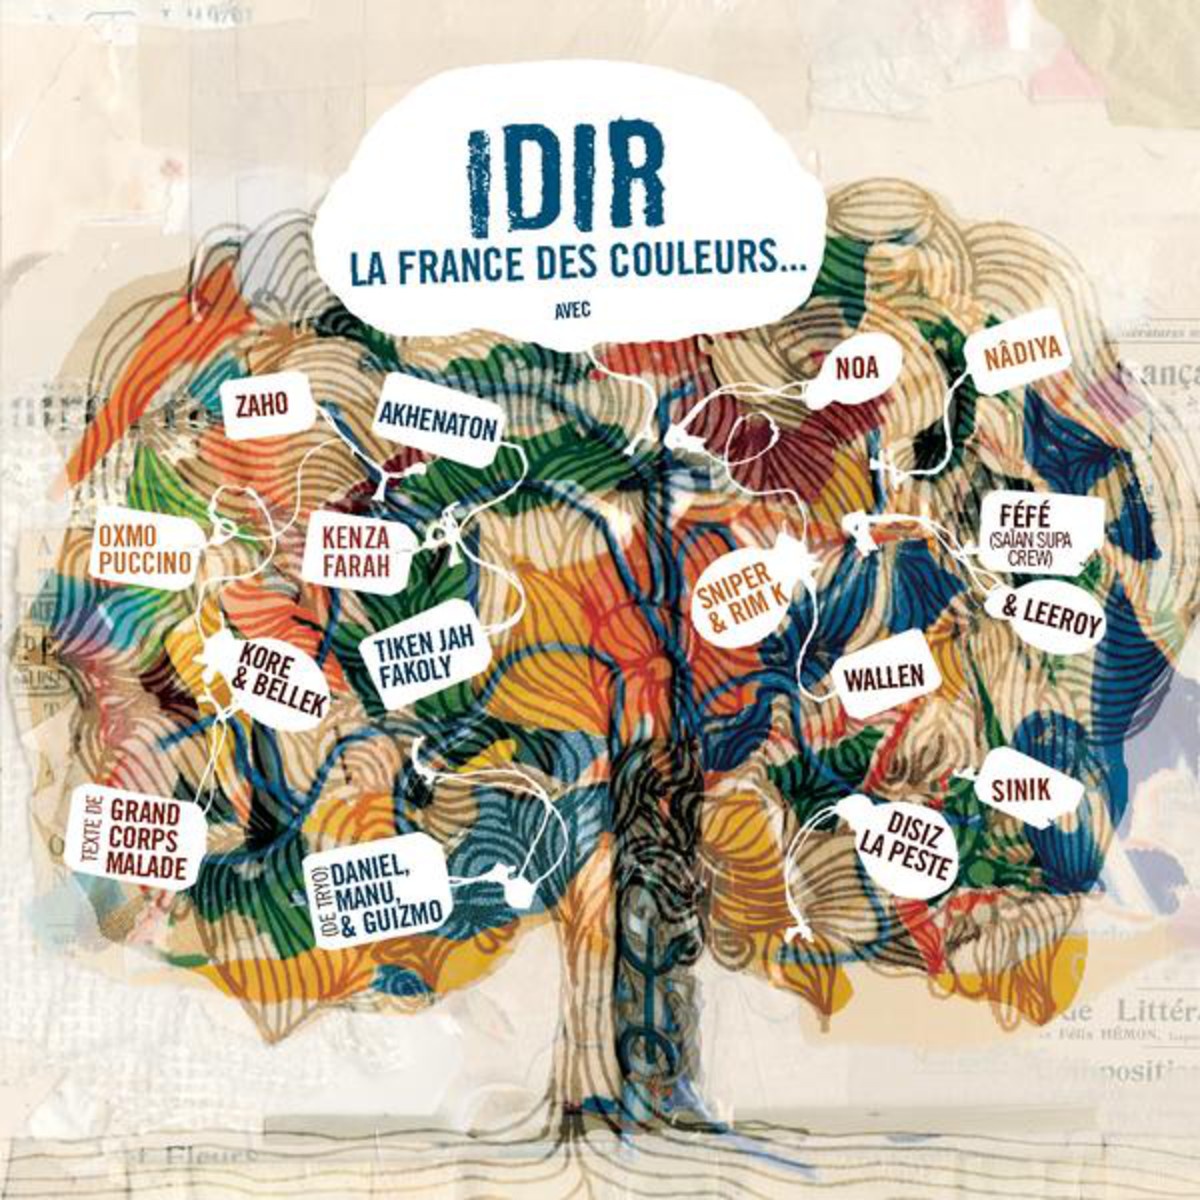 La France des couleurs - Album version